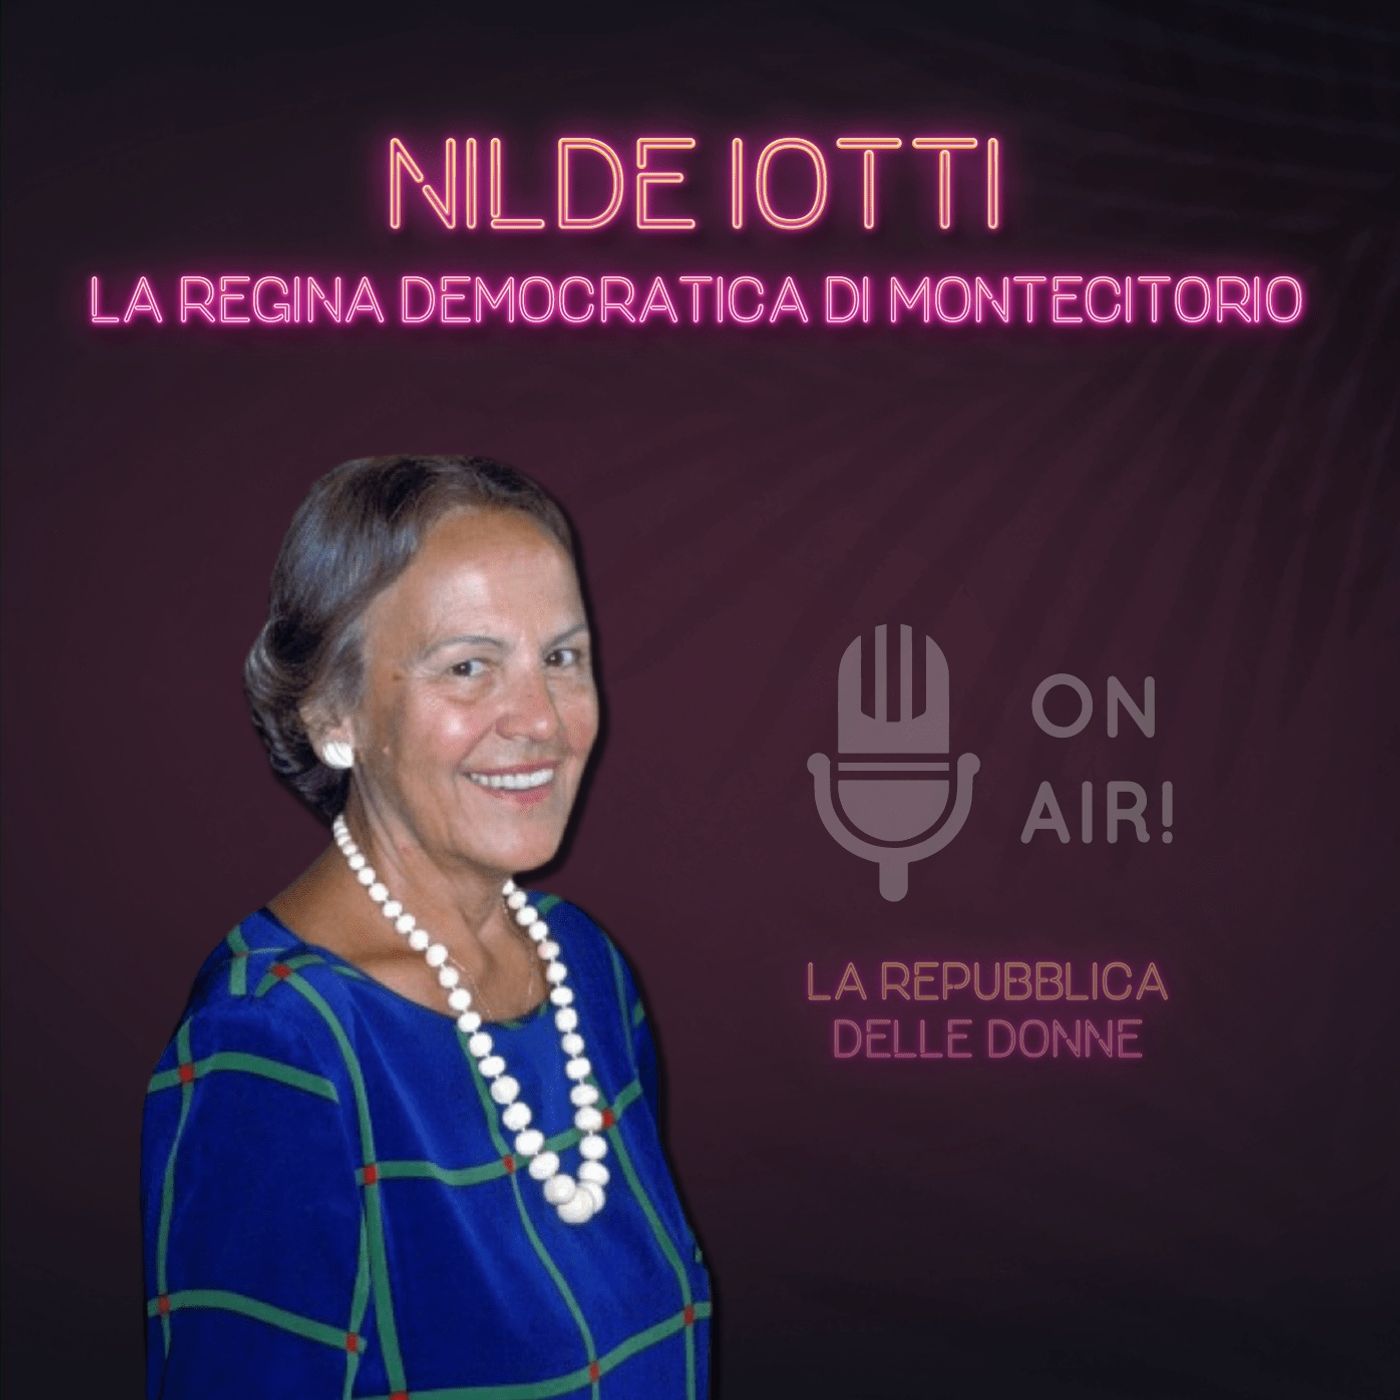 La Repubblica delle donne - 7° Episodio. Nilde Iotti, la regina democratica di Montecitorio. Di Mario Nanni